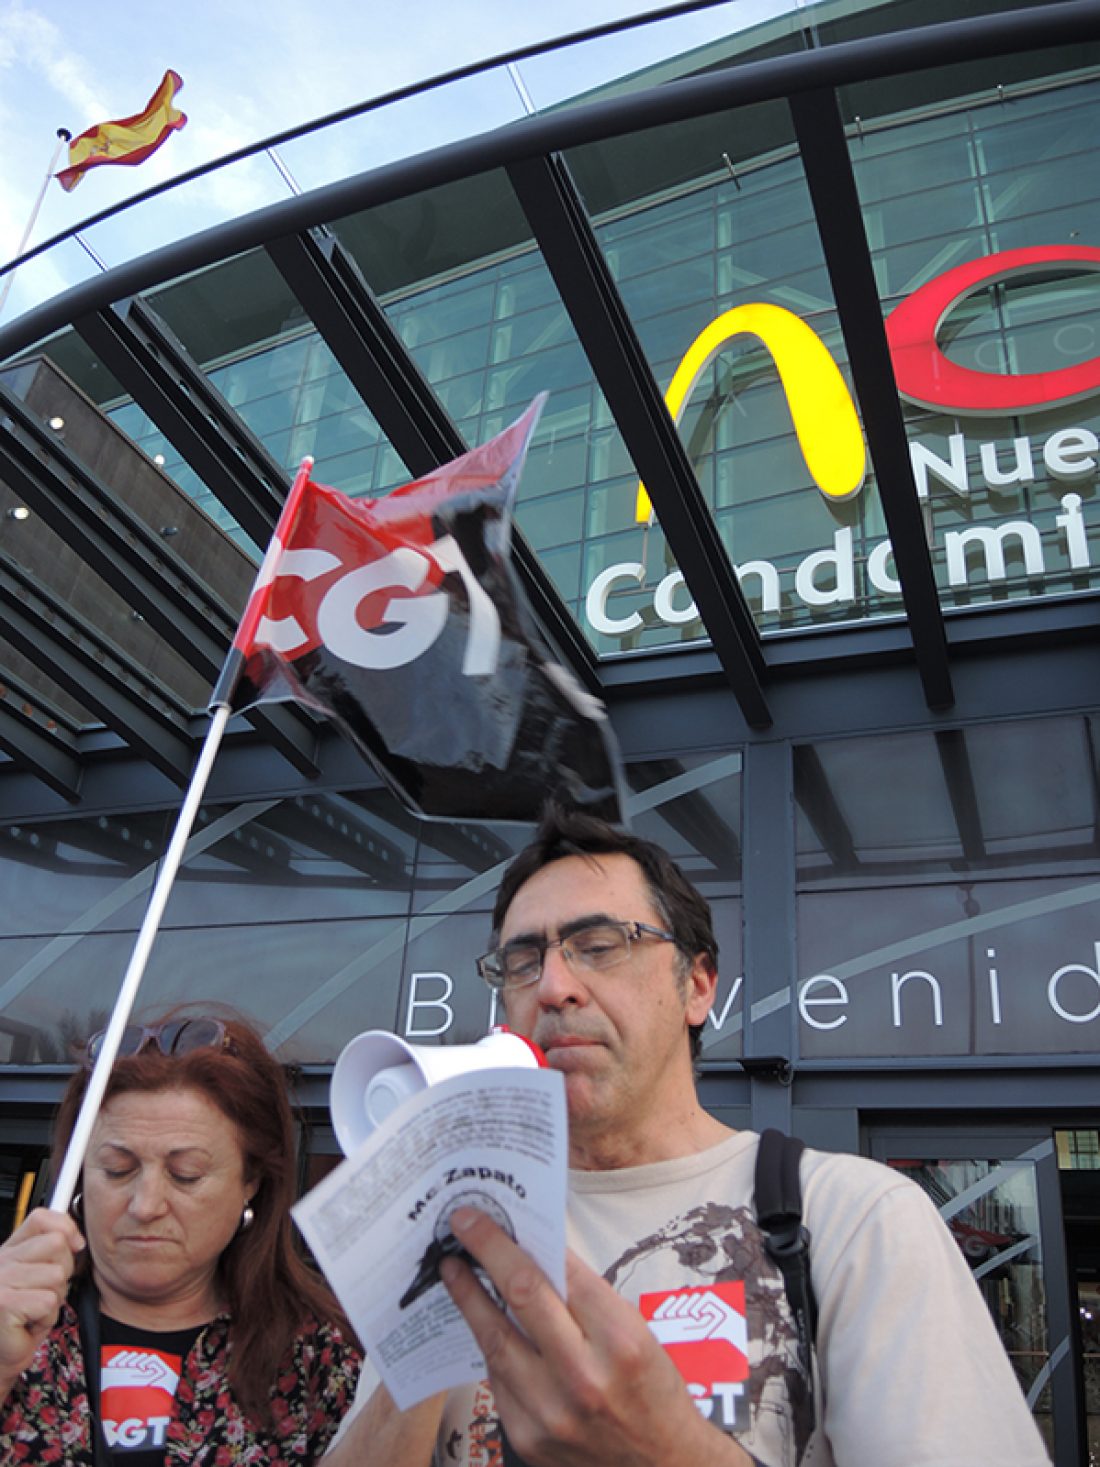 CGT Murcia gana el juicio a McDonalds por despido discriminatorio a una compañera